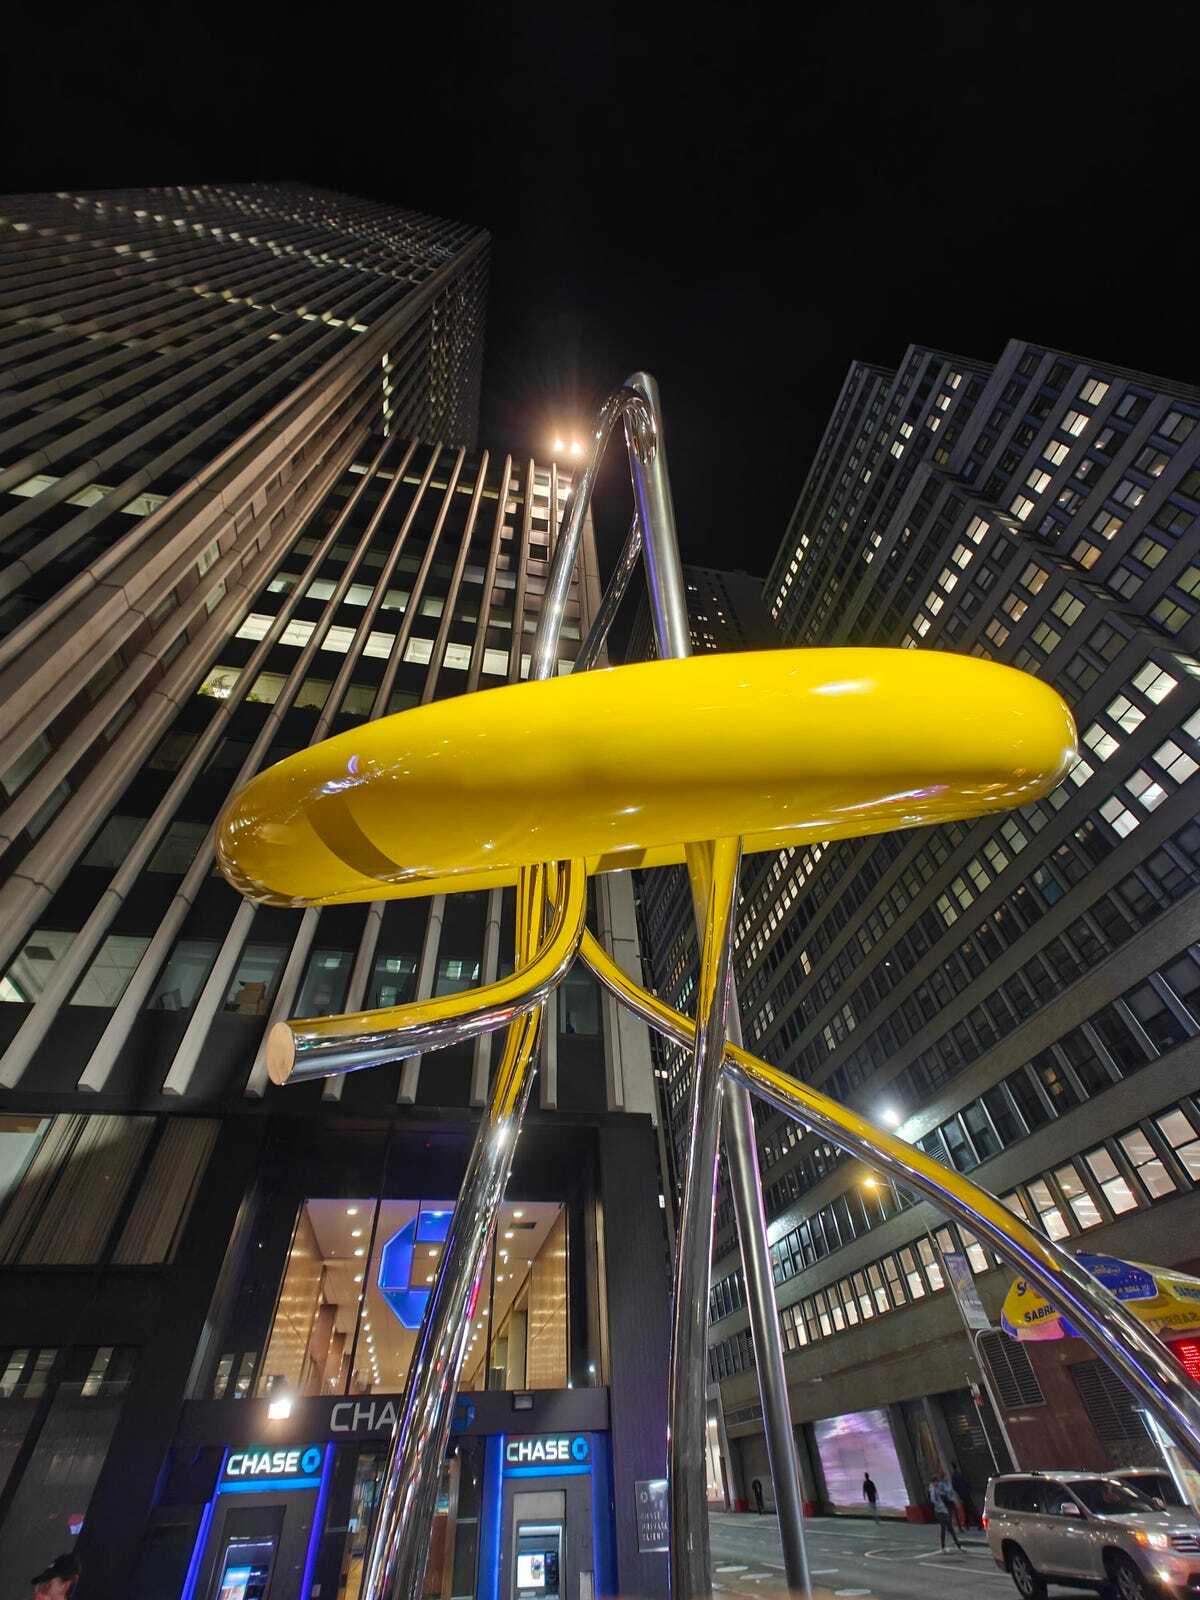 夜、ビル街にある黄色いオブジェを撮影した写真